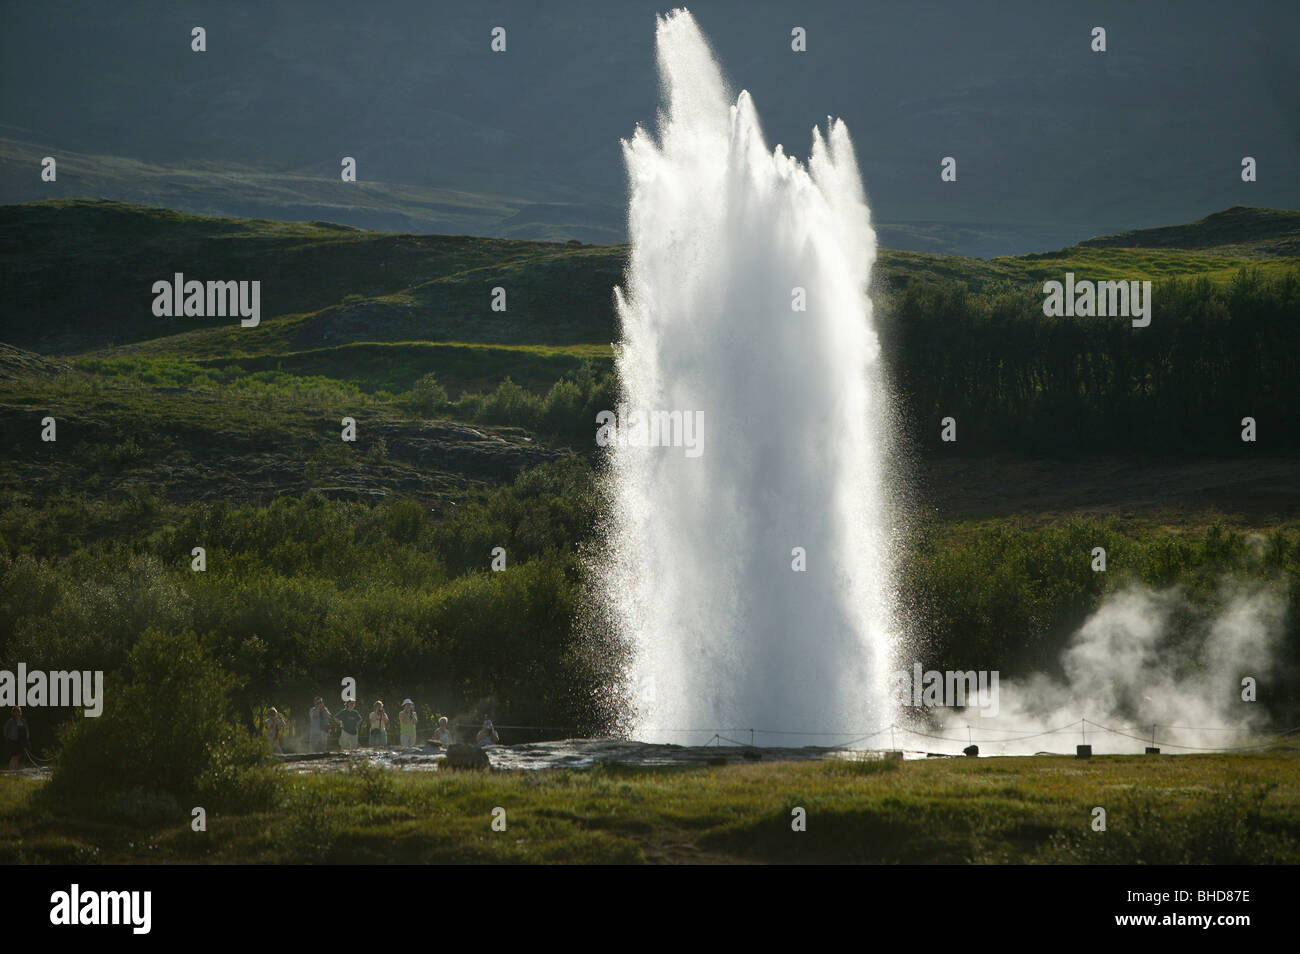 Strokkur Geyser erupting, Iceland Stock Photo